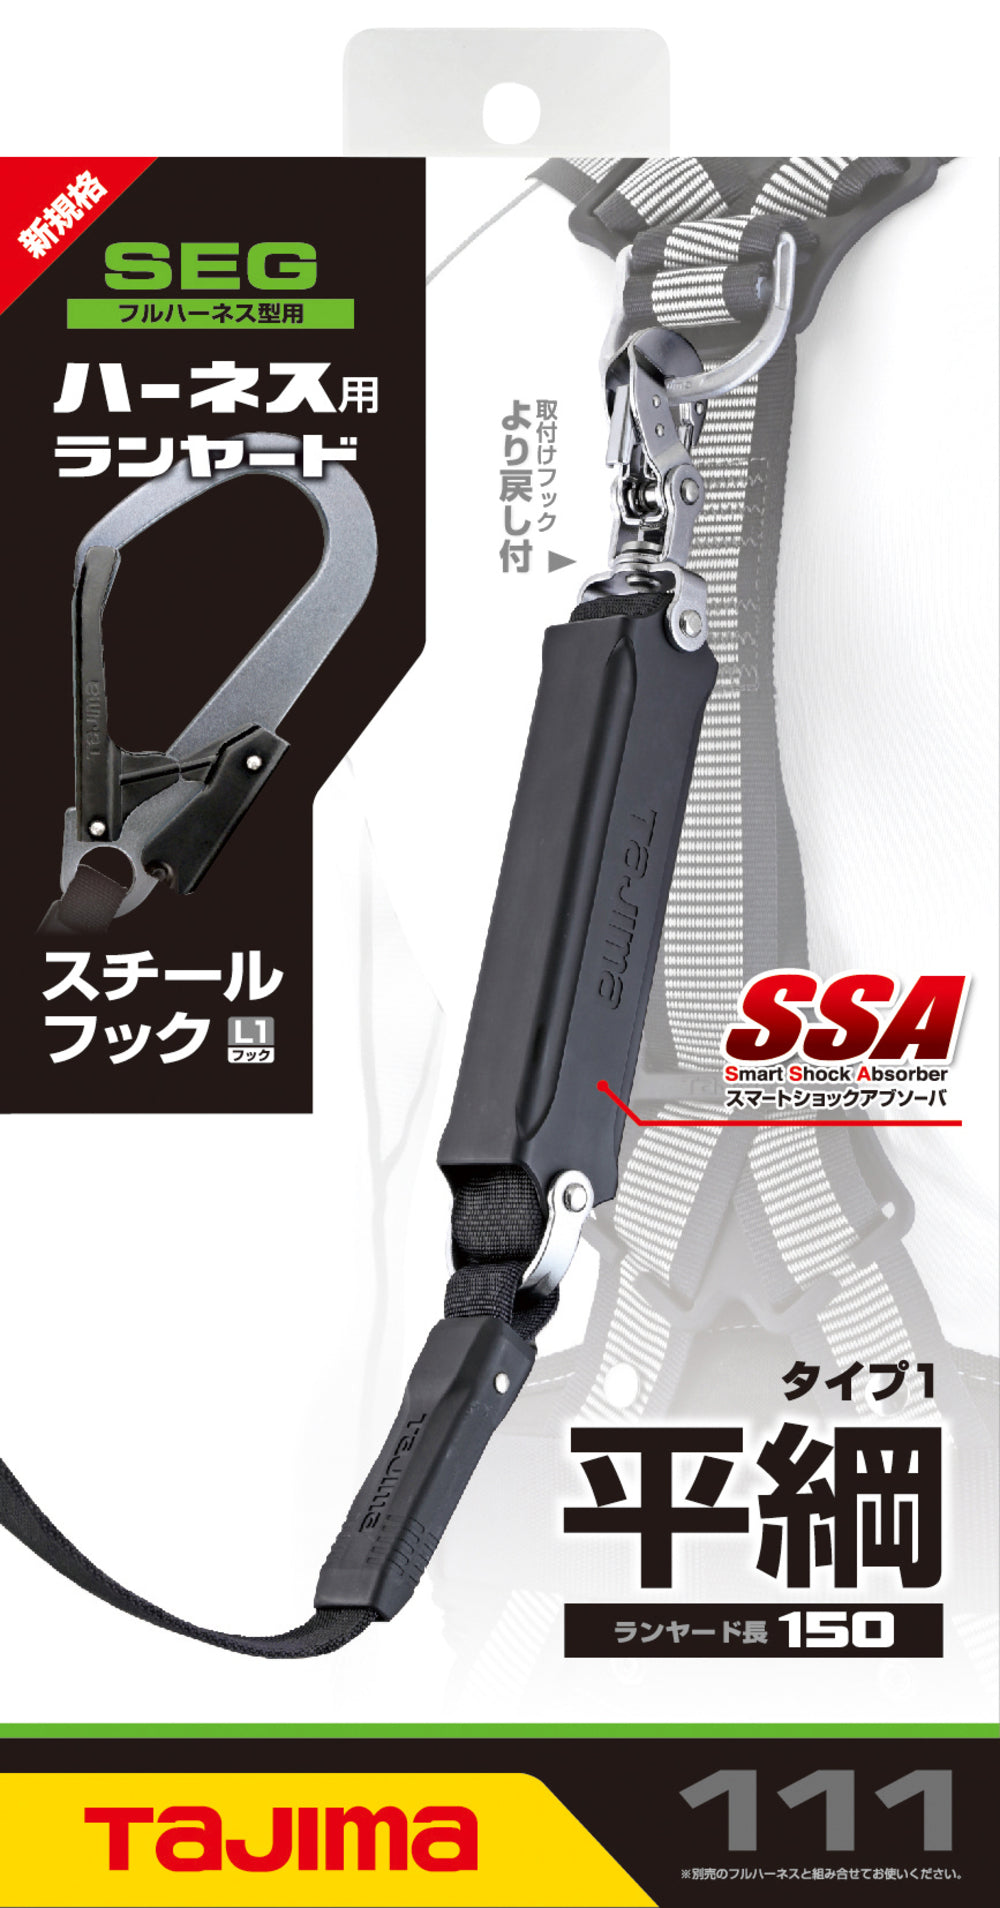 売れ 【SALE価格】タジマ ハーネス用ランヤード平ロープ ダブル L1